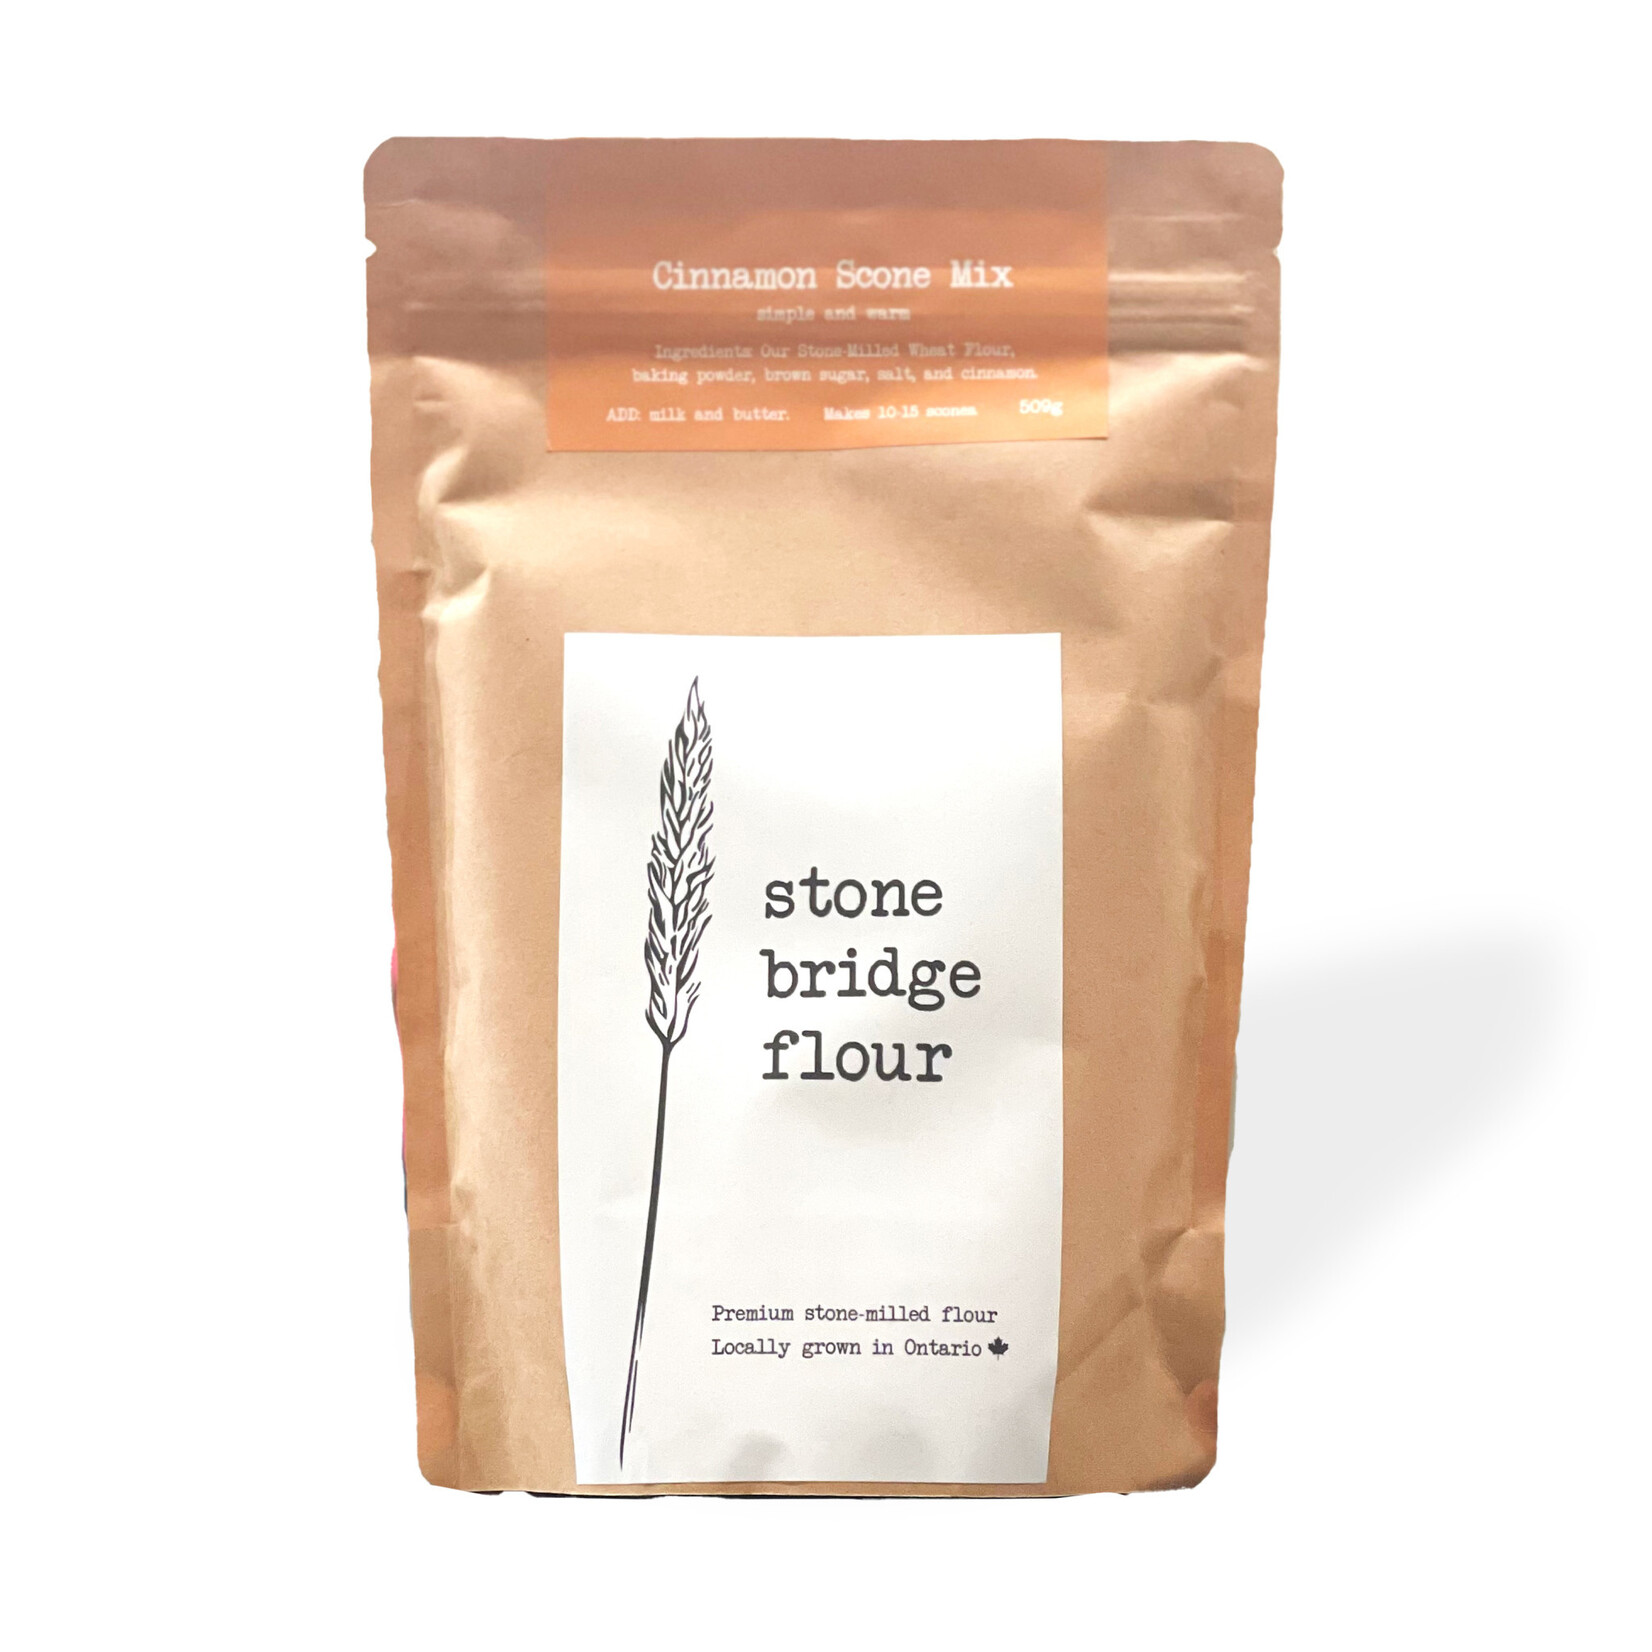 Stone Bridge Flour Savoury Flour Mixes